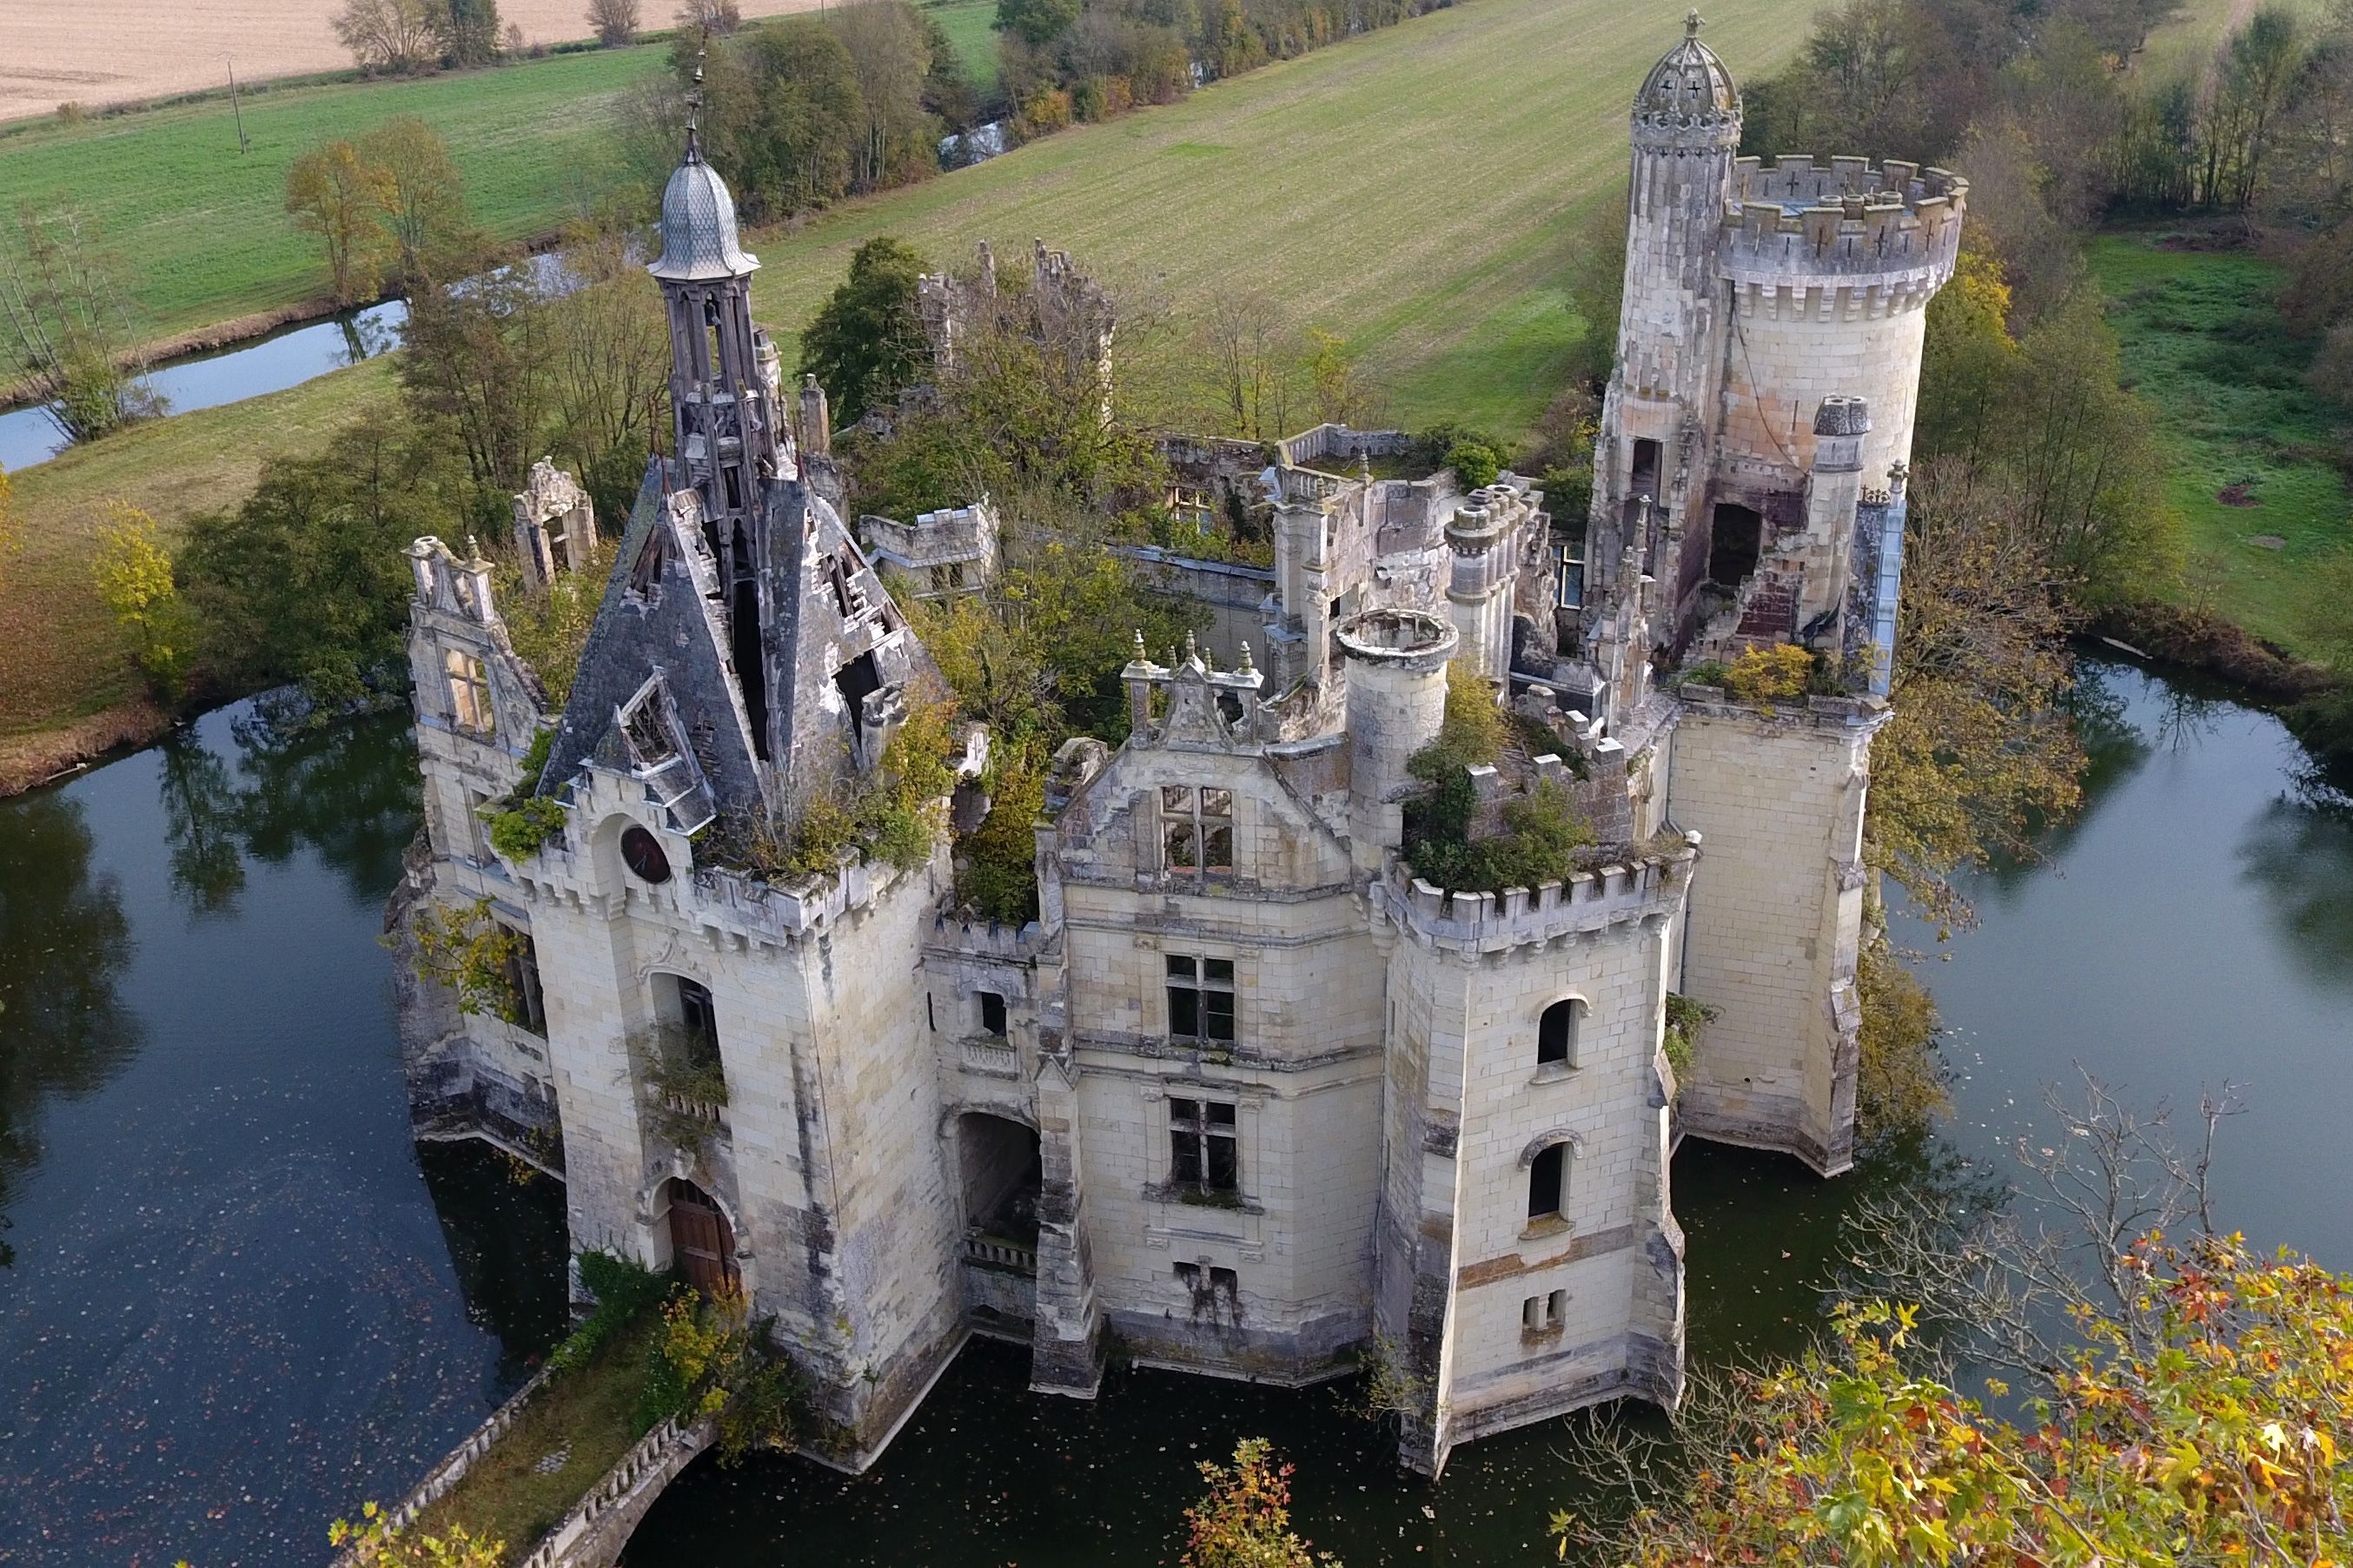 Разбитая крепость. Замок мот-Шанденье. Замок Mothe Chandeniers, Франция. Шато мот-Шанденье. Заброшенный замок «Chateau de Noisy». Бельгия..